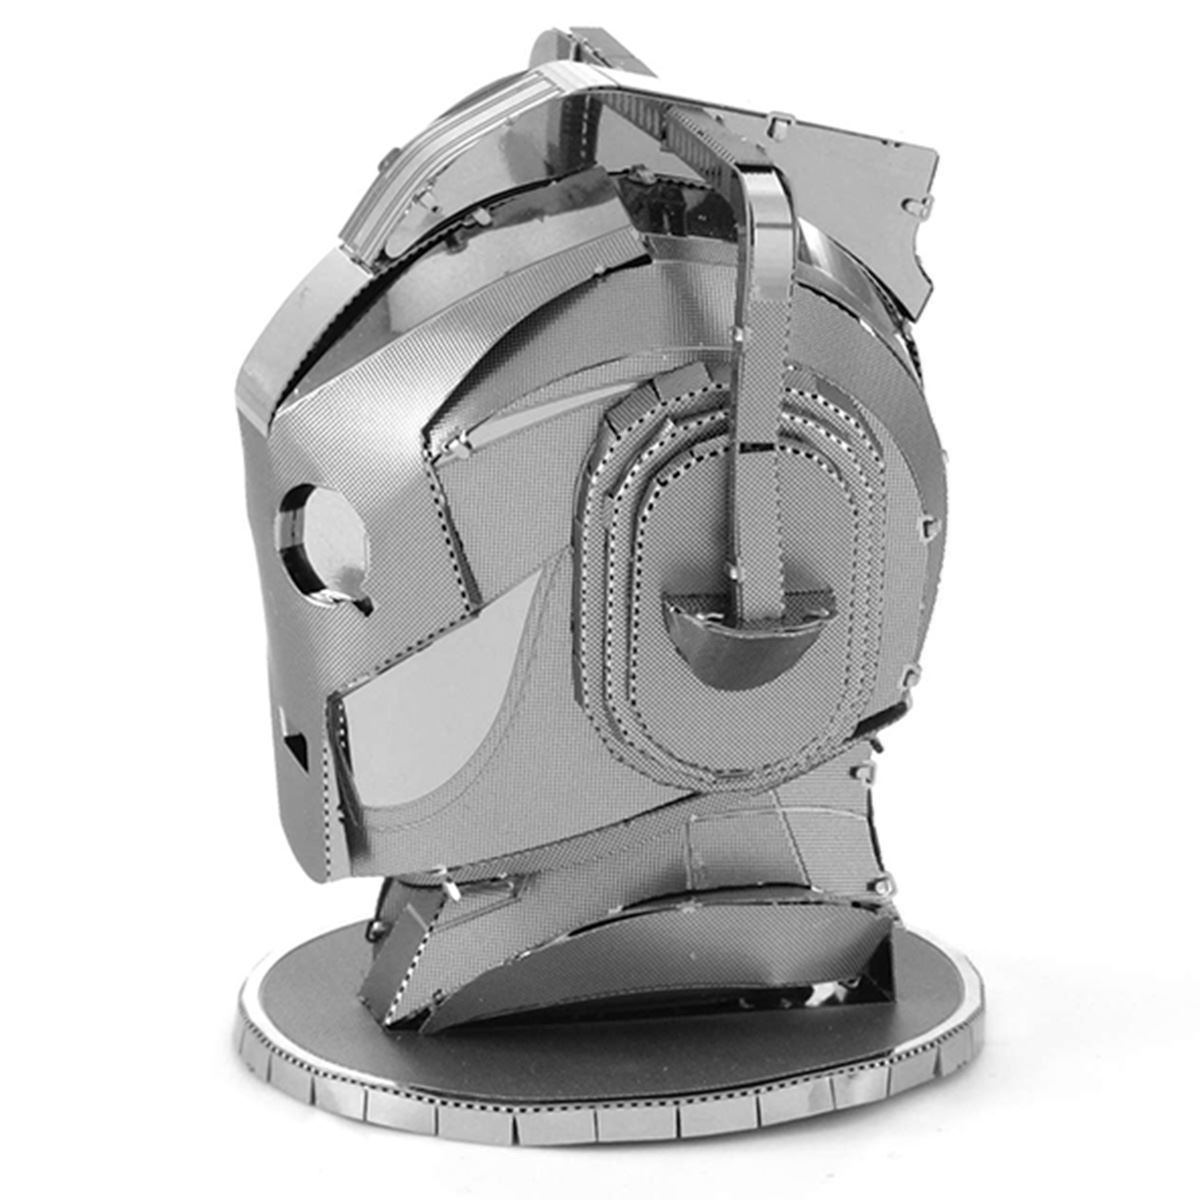 Metal Earth Doctor Who Cyberman Head Laser Cut DIY 3D Model Building Kit Dr